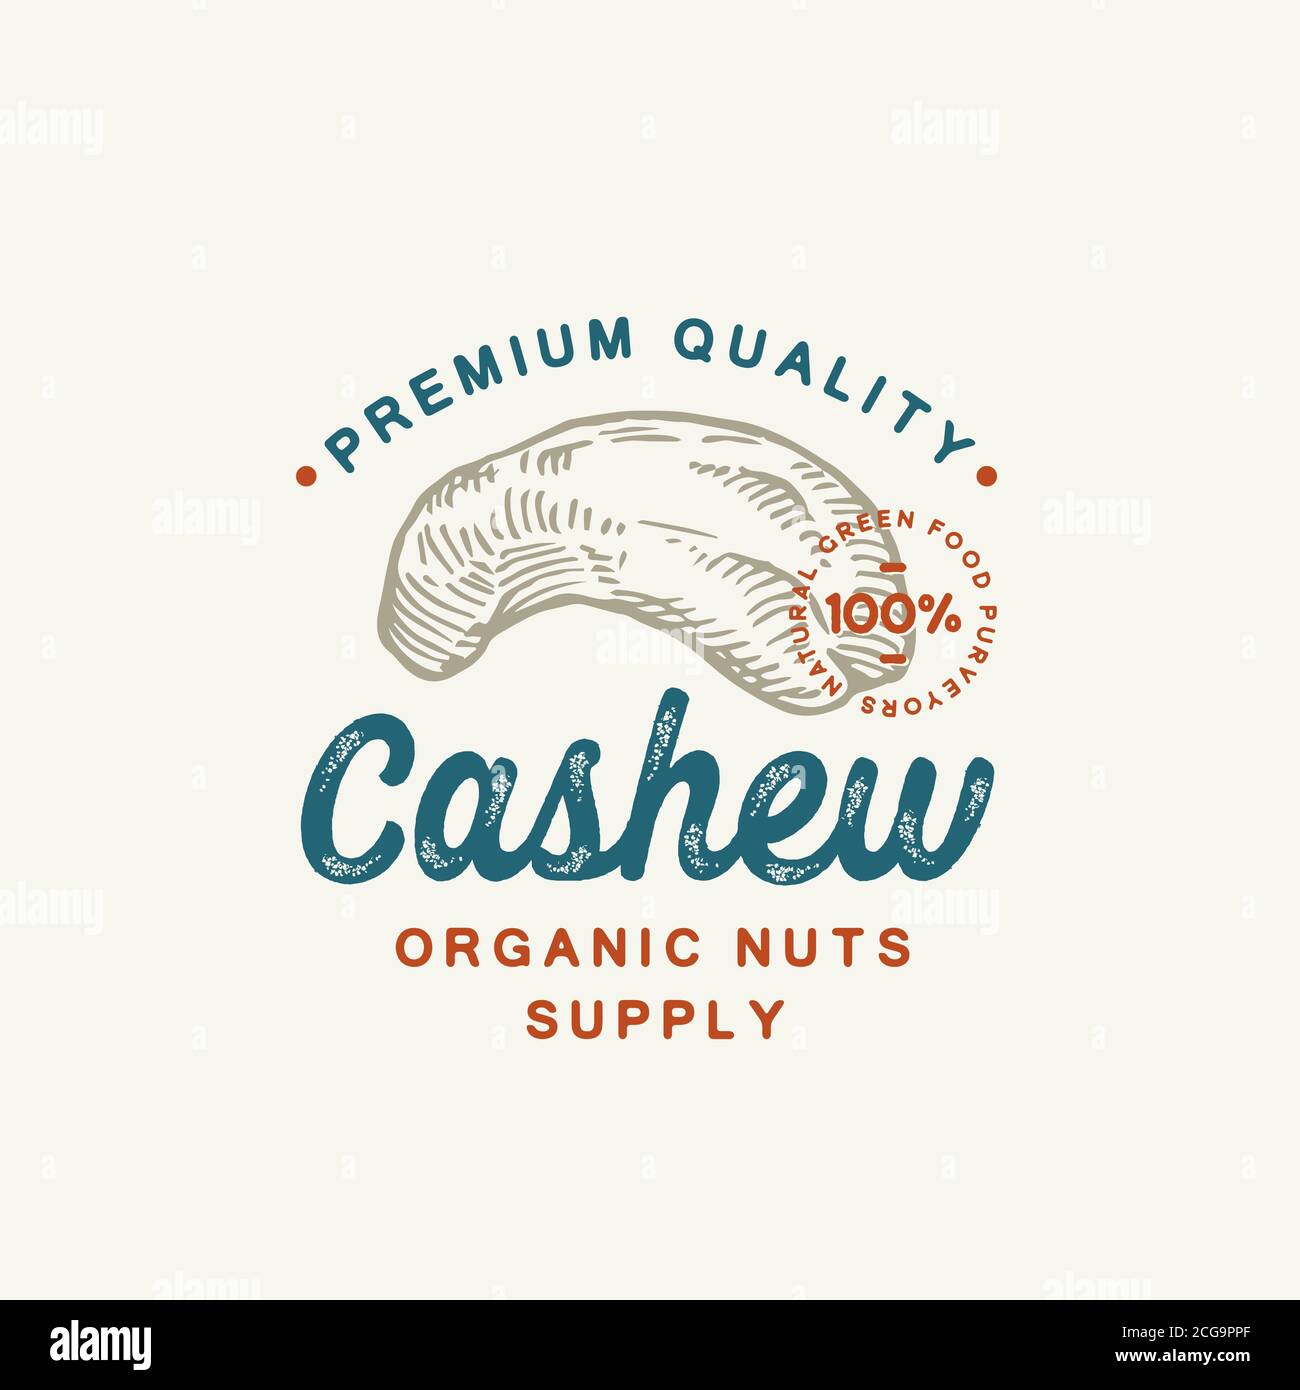 Premium-Qualität Cashew abstrakten Vektor-Zeichen, Symbol oder Logo-Vorlage. Handgezeichnete Cashew Nut Sketch Silhouette mit Retro Typografie und Siegel. Vintage Stock Vektor